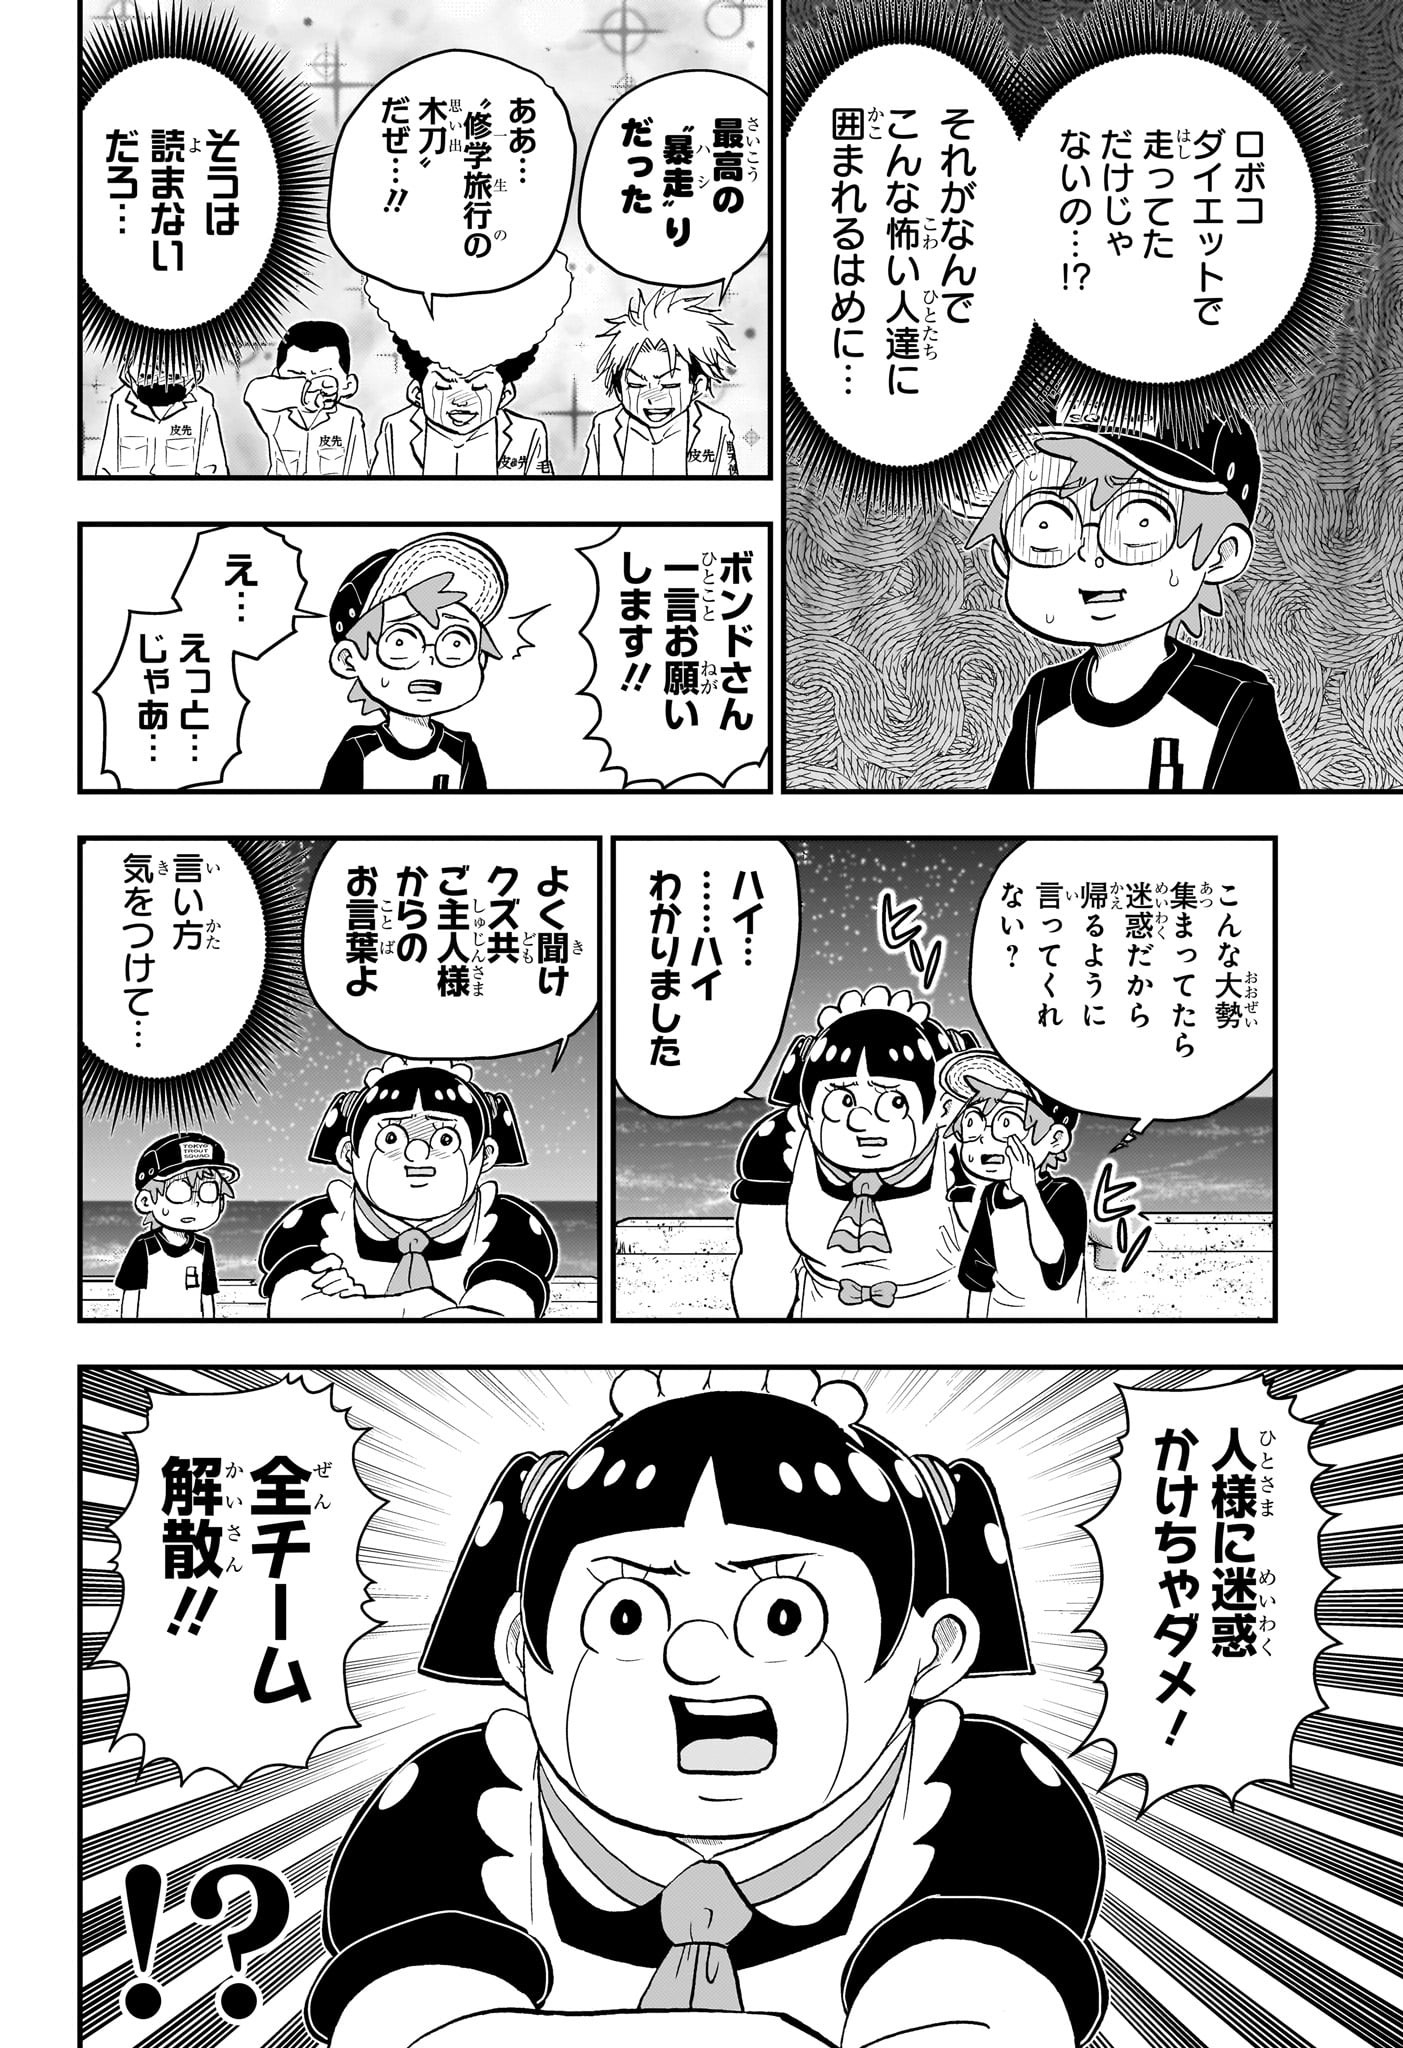 Boku to Roboko - Chapter 162 - Page 14